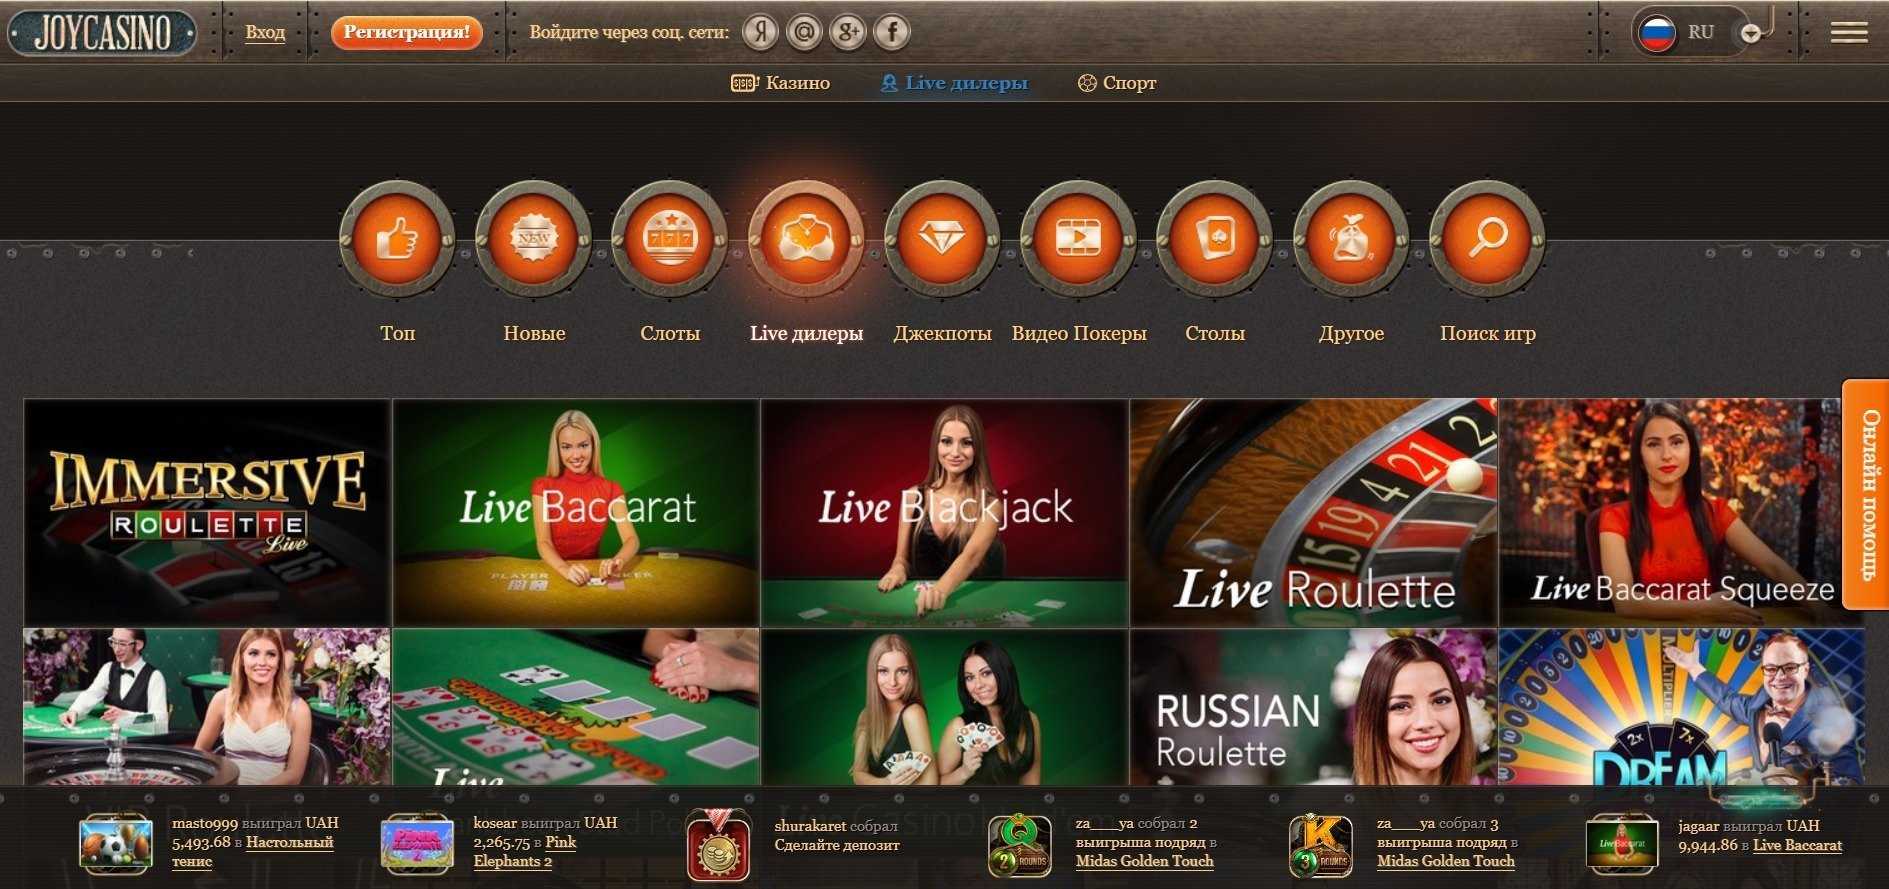 джой casino официальный казино х сайт рабочее зеркало